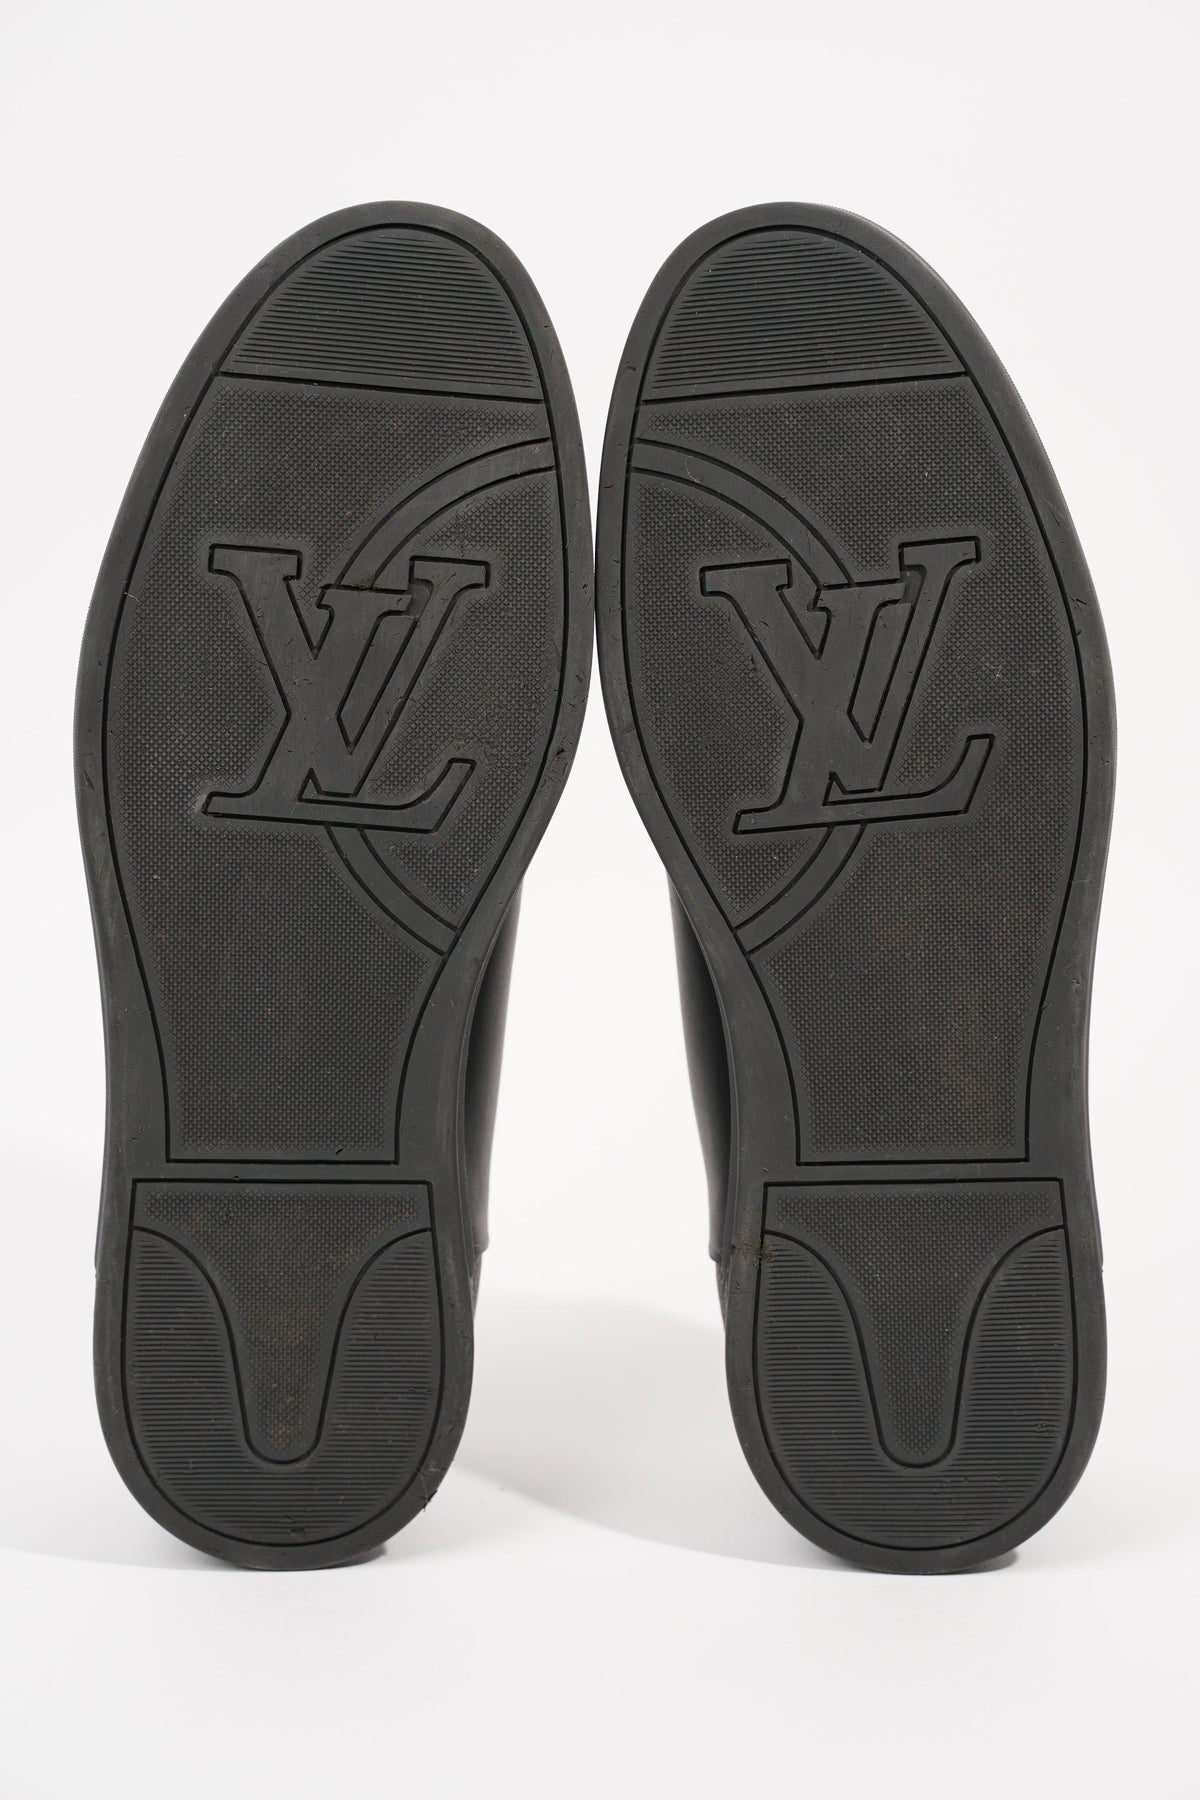 Louis Vuitton, Shoes, Louis Vuitton Men Shoes Damier Black Leather Buckle  95uk 5us New Never Worn